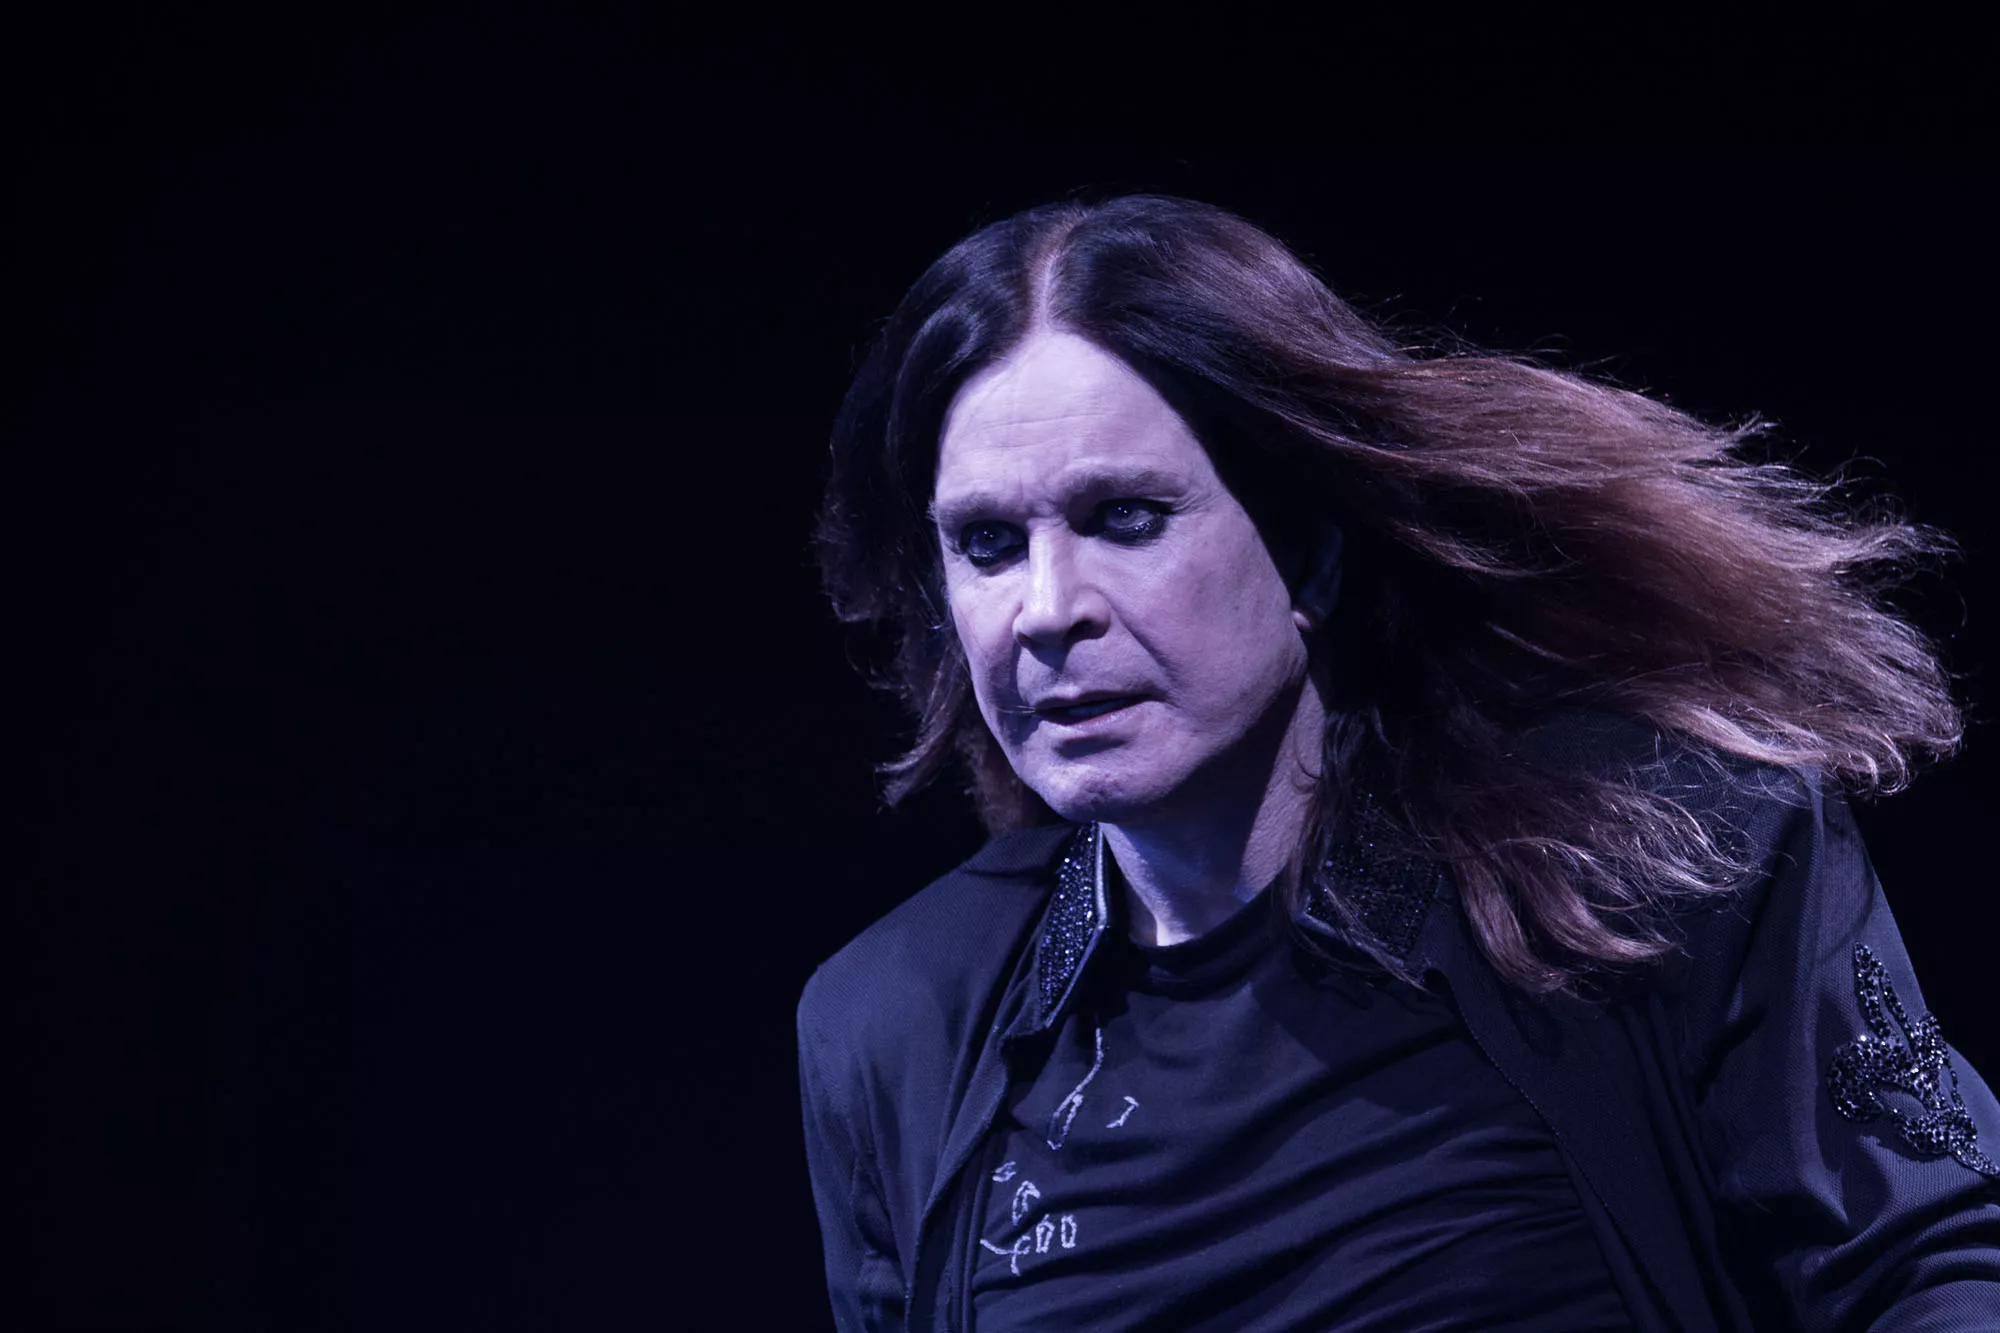 ERSÄTTARNA: Black Sabbath del två – kaos av medlemsbyten ledde till återförening